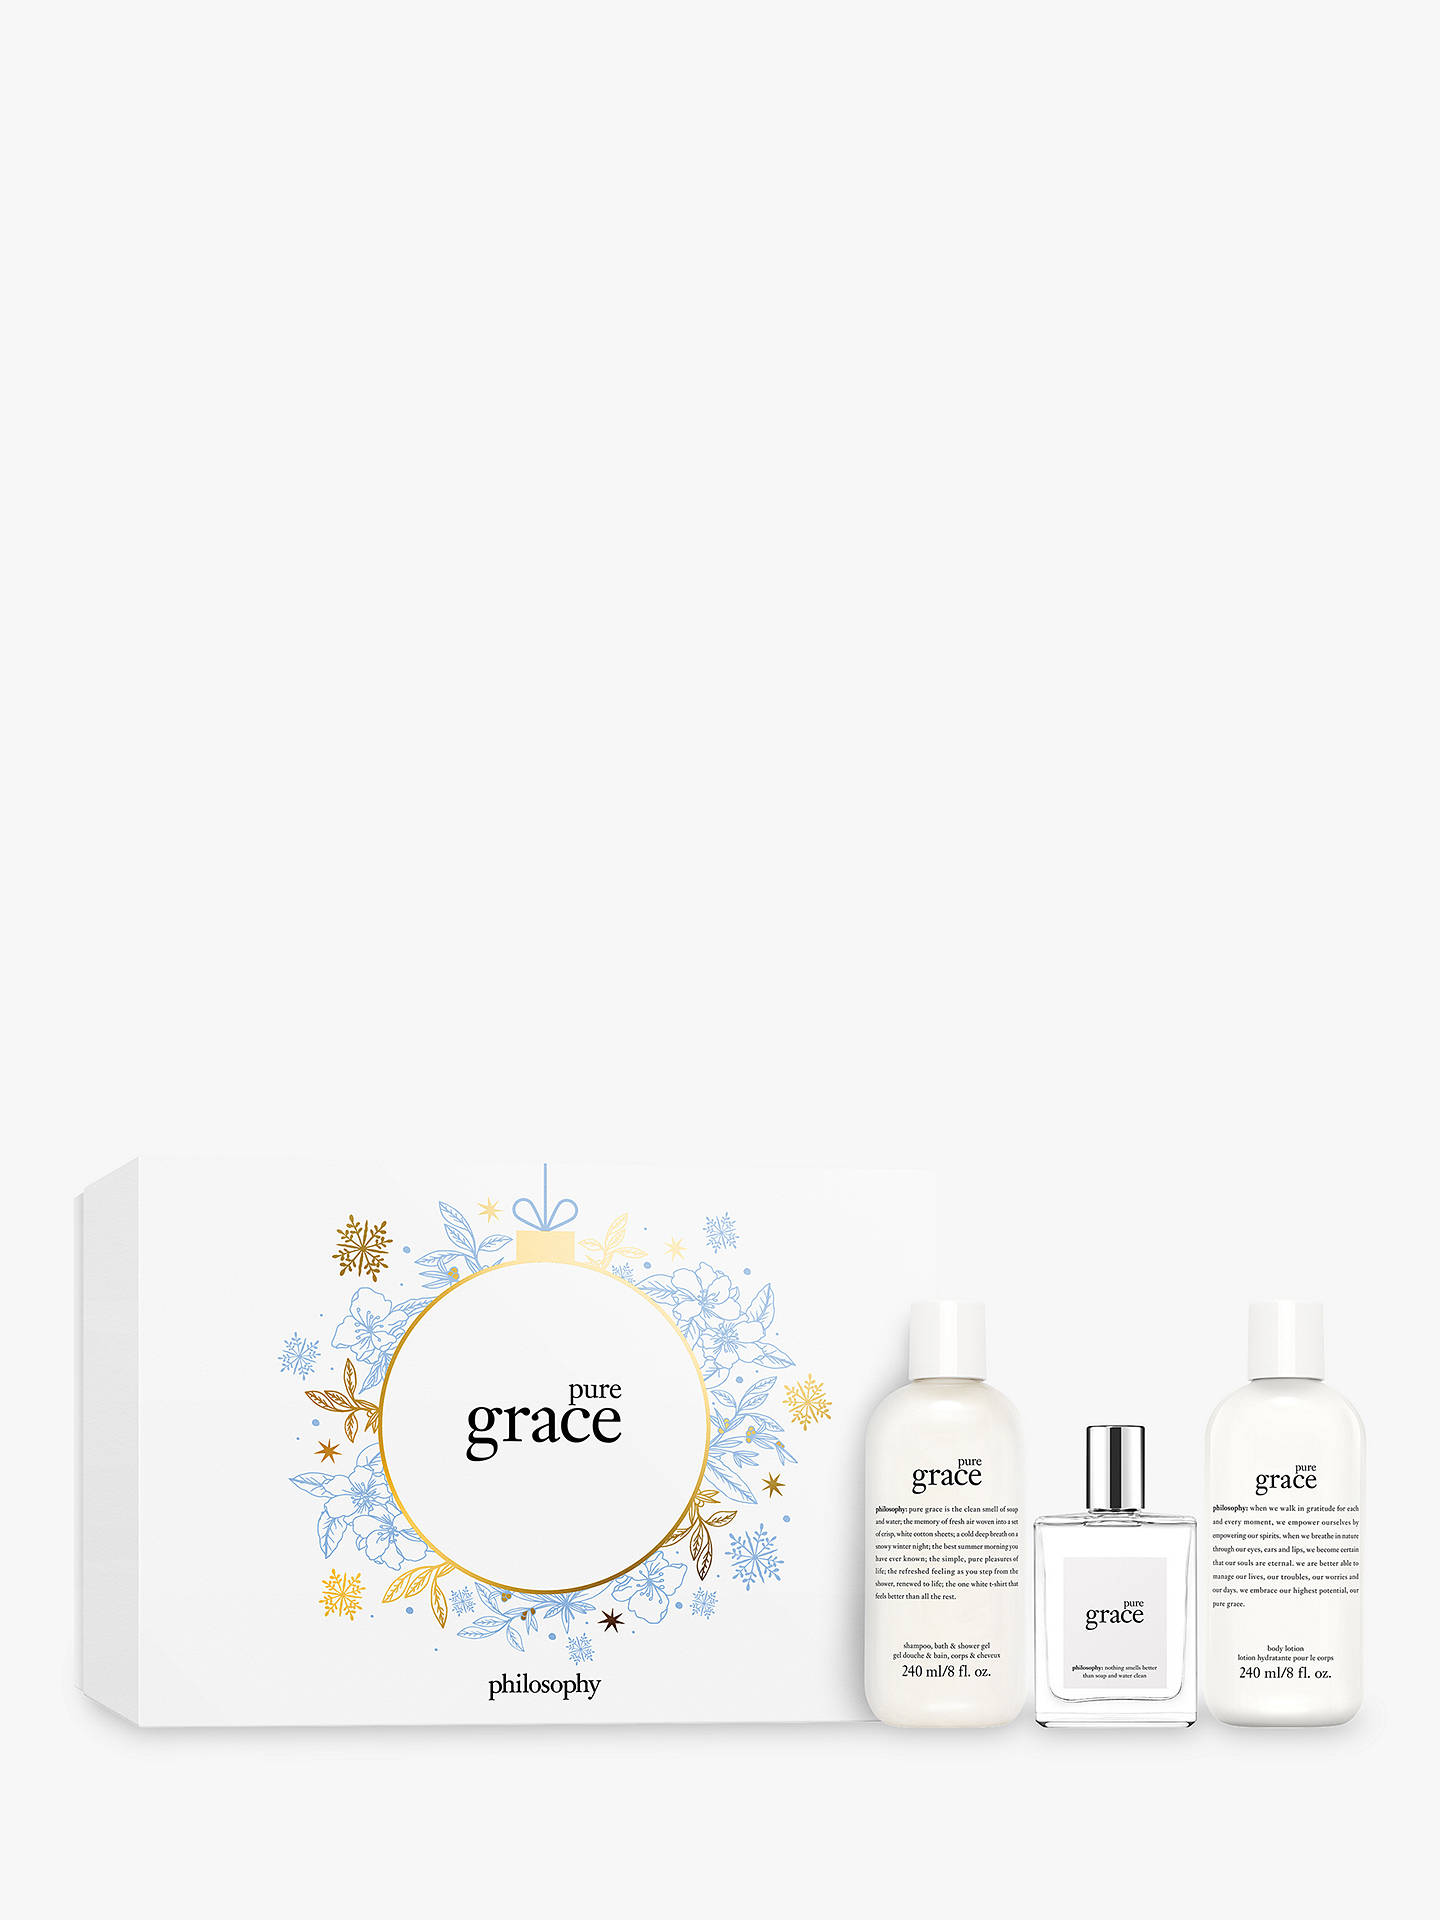 Philosophy Pure Grace Eau de Toilette 60ml Fragrance Gift Set at John